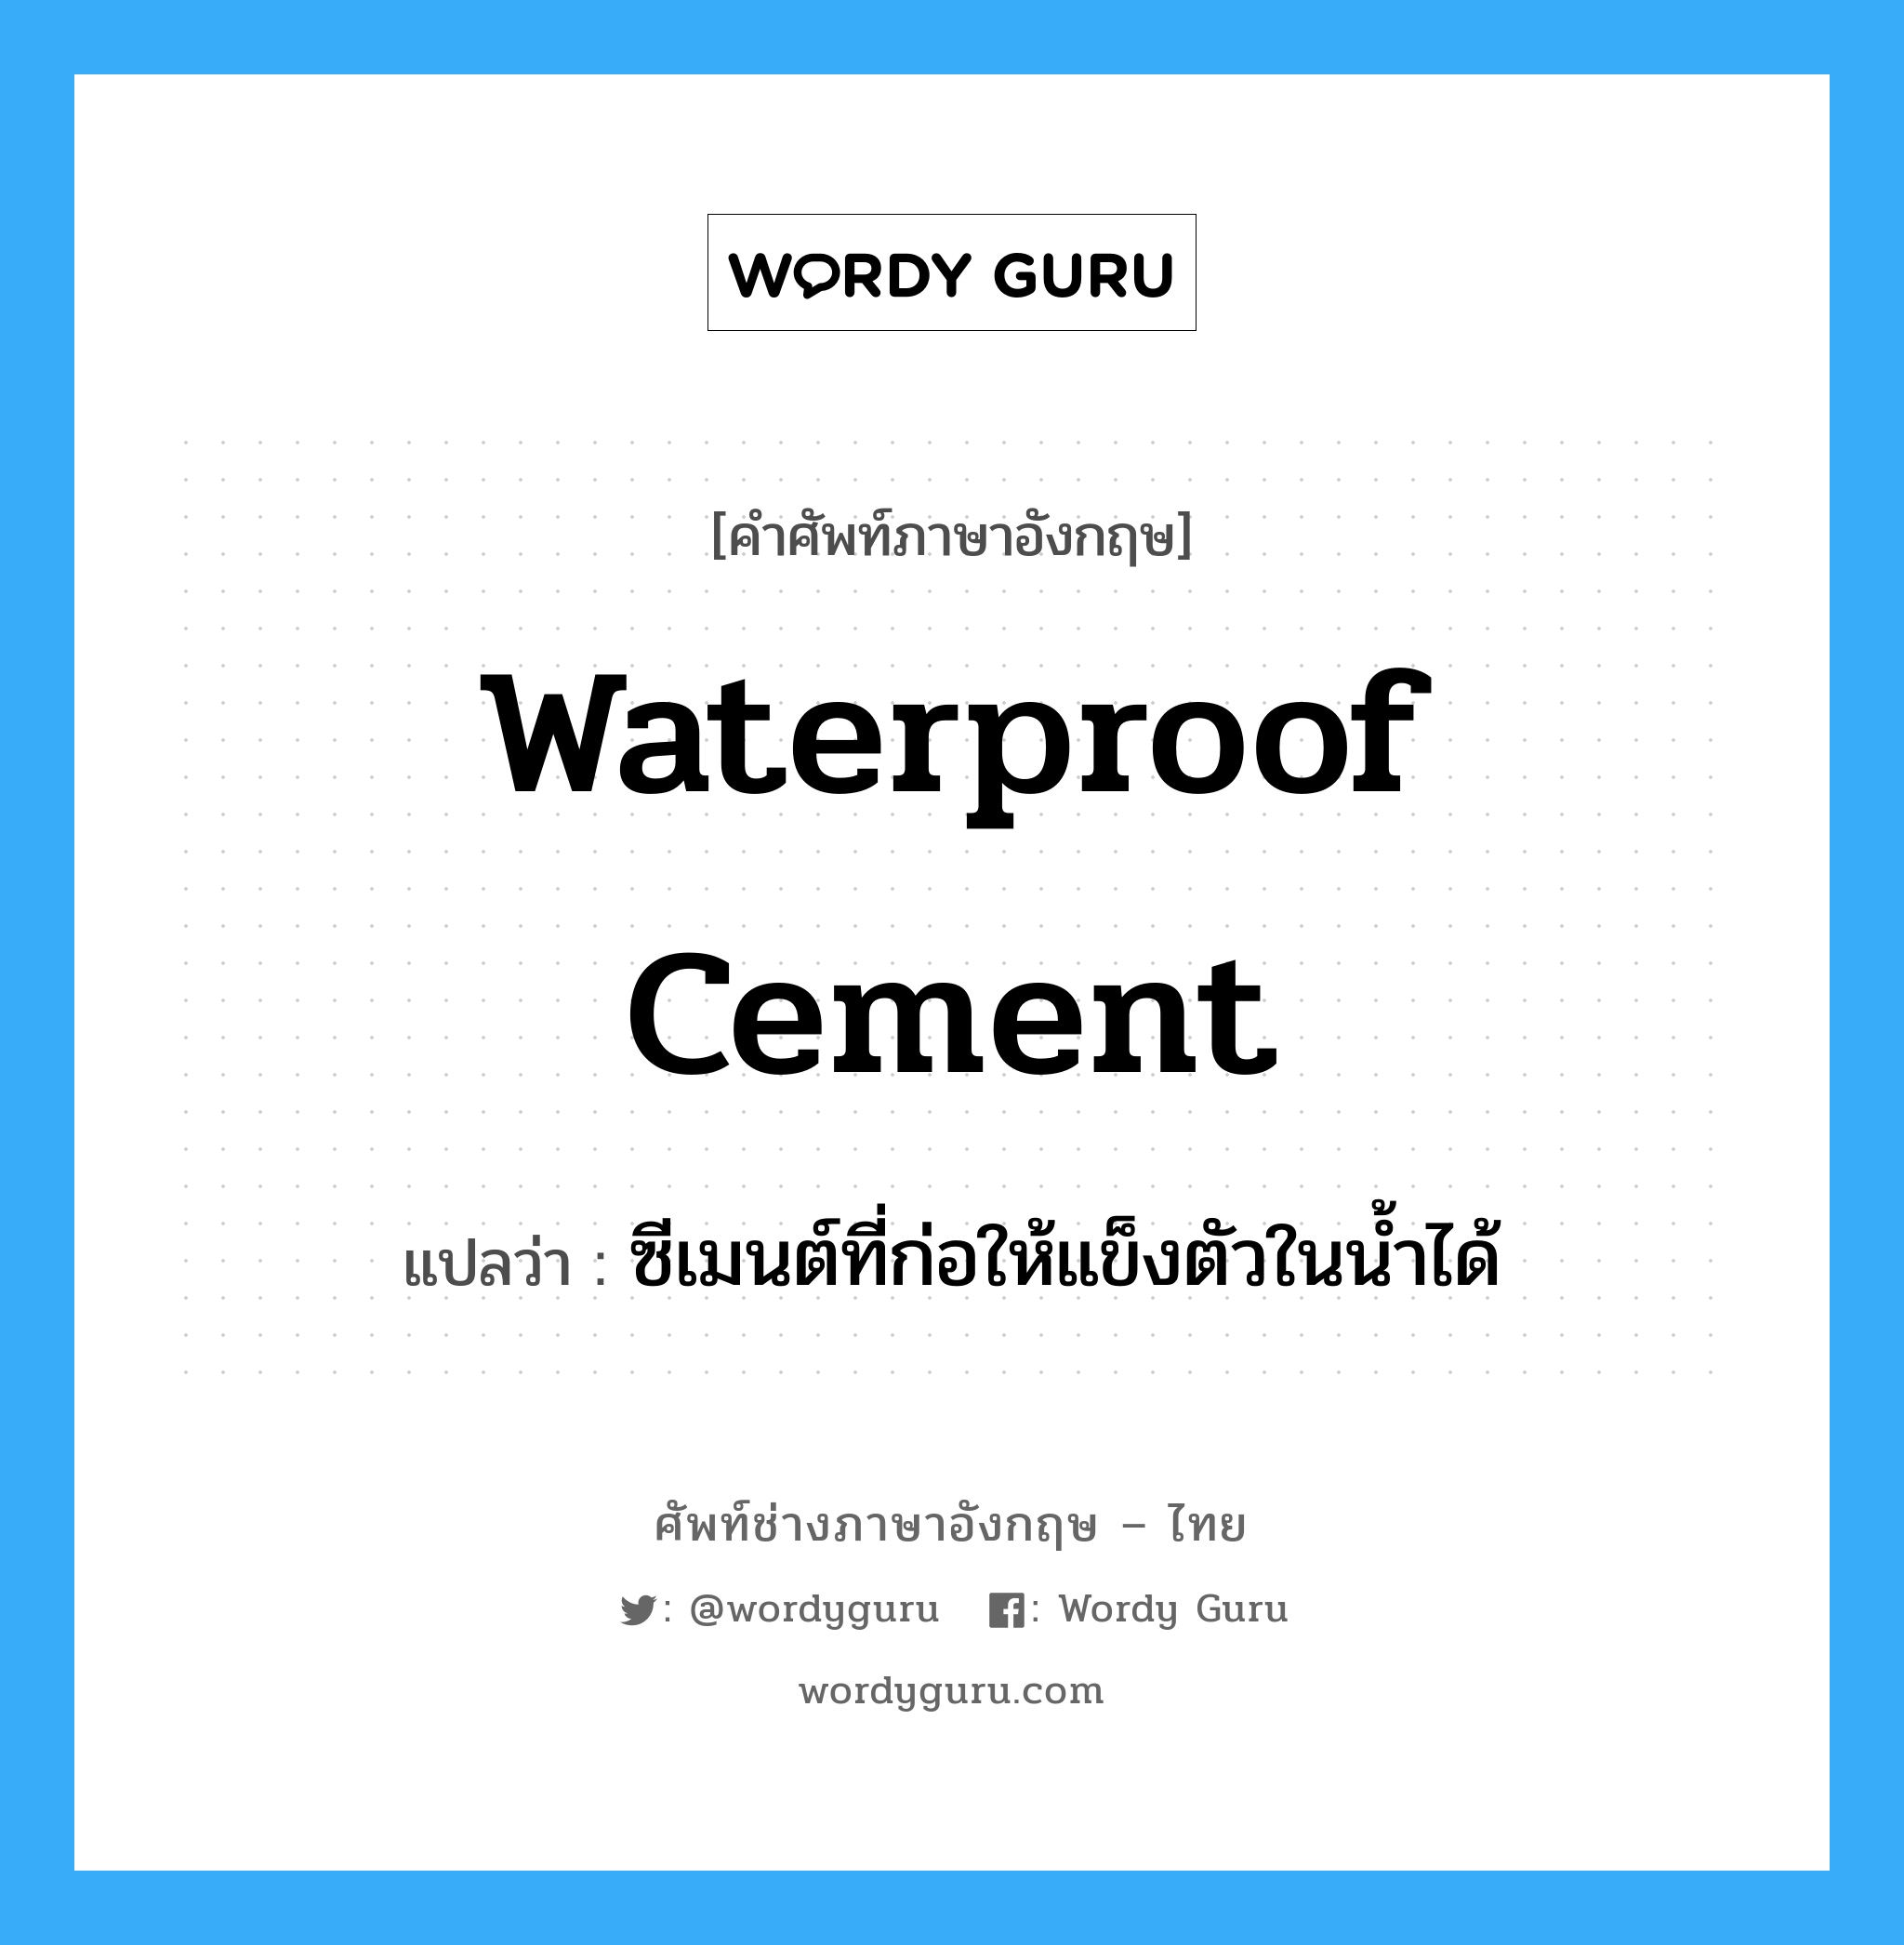 ซีเมนต์ที่ก่อให้แข็งตัวในน้ำได้ ภาษาอังกฤษ?, คำศัพท์ช่างภาษาอังกฤษ - ไทย ซีเมนต์ที่ก่อให้แข็งตัวในน้ำได้ คำศัพท์ภาษาอังกฤษ ซีเมนต์ที่ก่อให้แข็งตัวในน้ำได้ แปลว่า waterproof cement